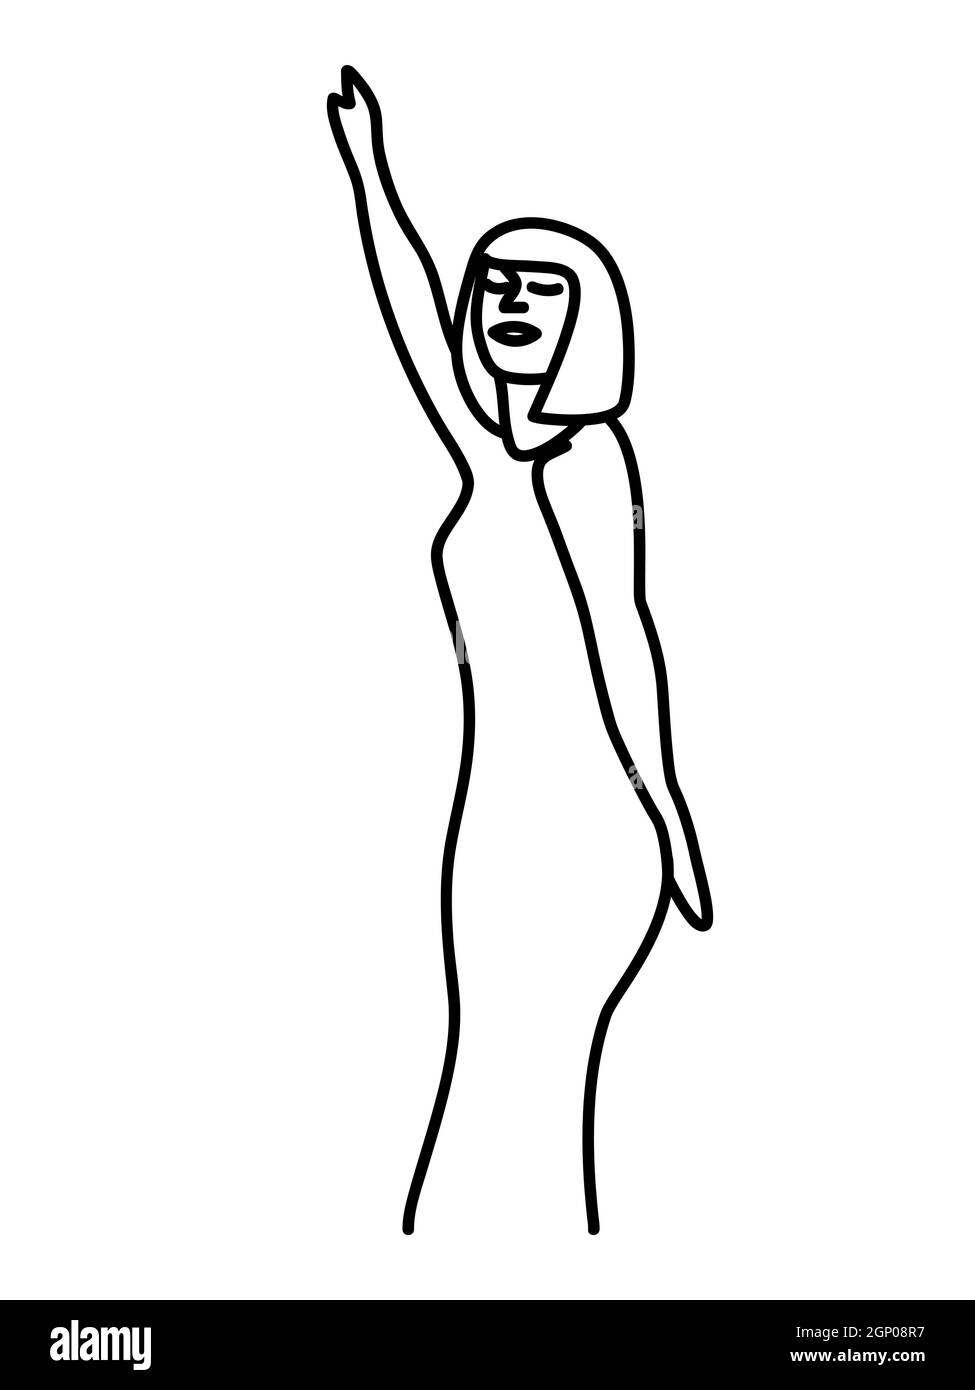 Minimalisme Portrait vectoriel féminin dessiné à la main dans un style moderne abstrait à une ligne. Décor imprimé, art mural, design créatif pour les médias sociaux.mode modèle portrait whit dance femme Illustration de Vecteur